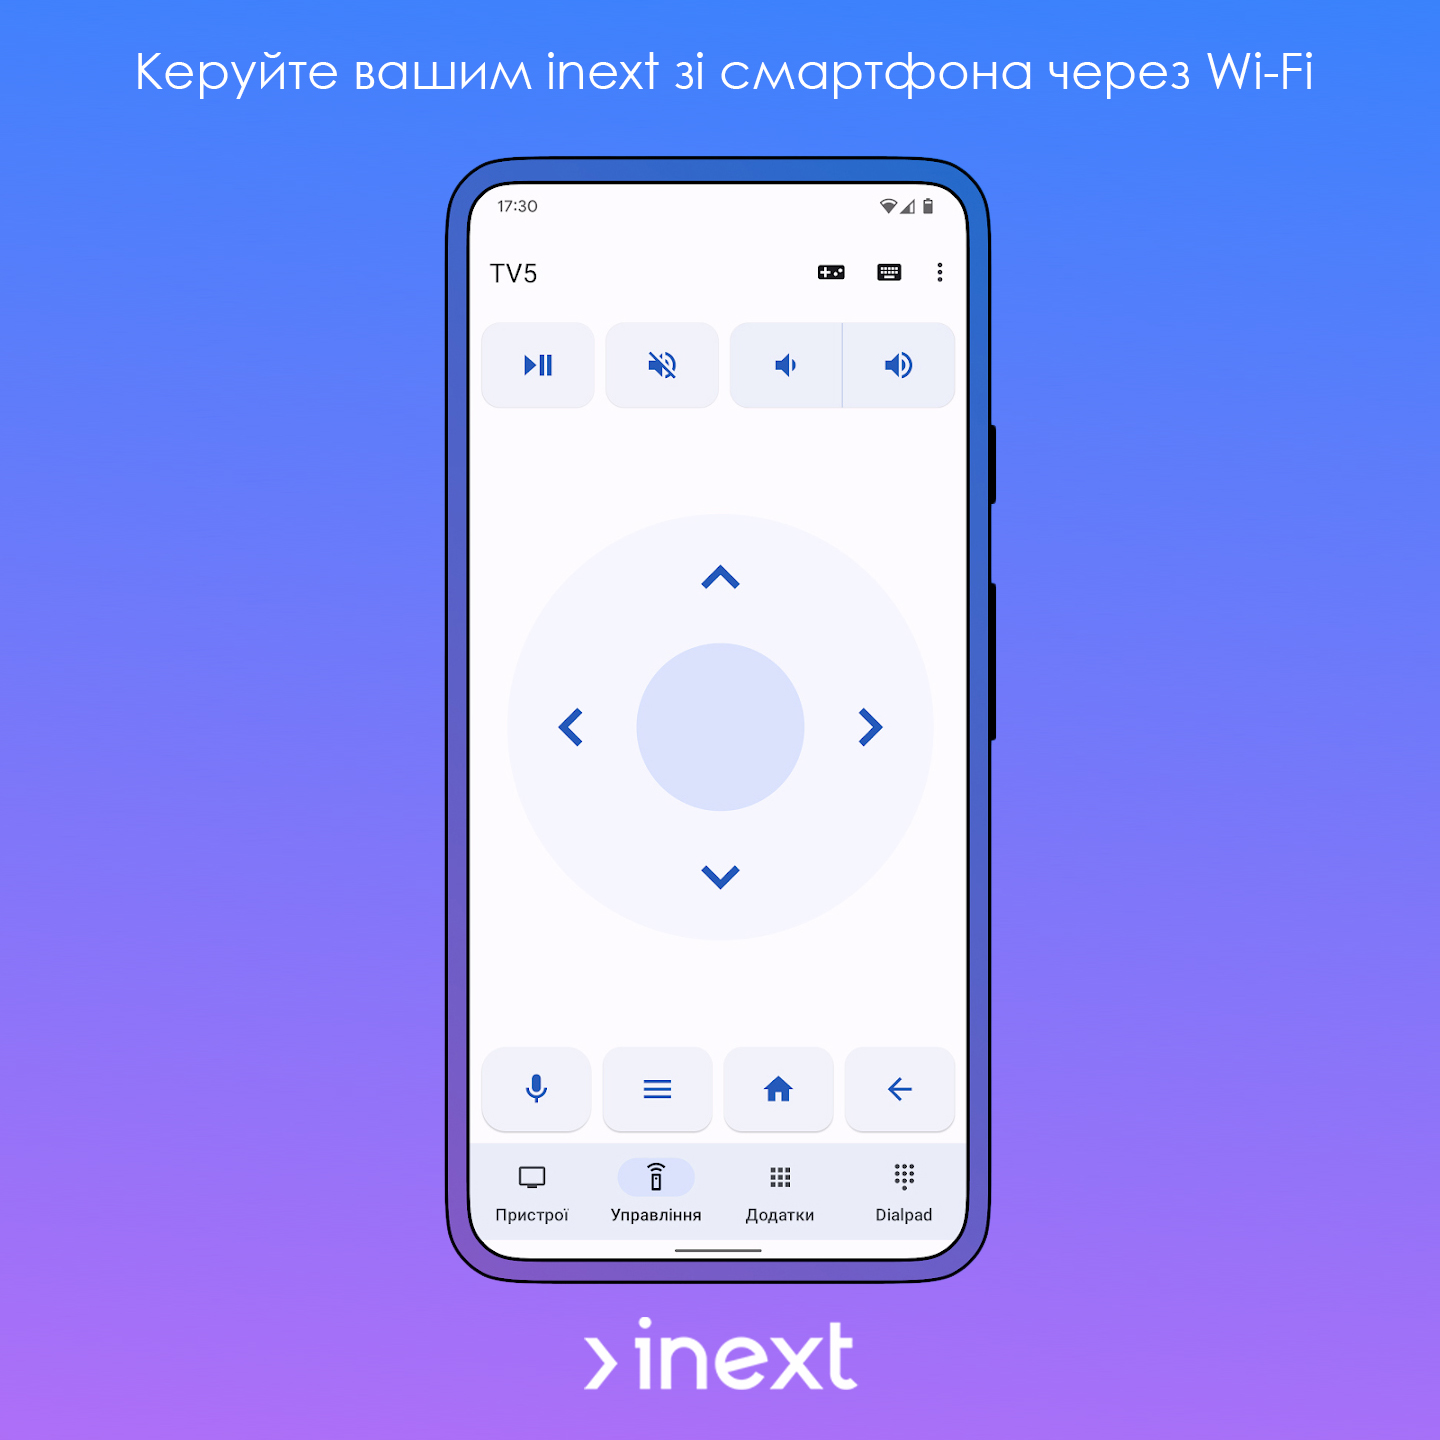 Керуйте пристроями inext за допомогою смартфону на Android - inext.ua